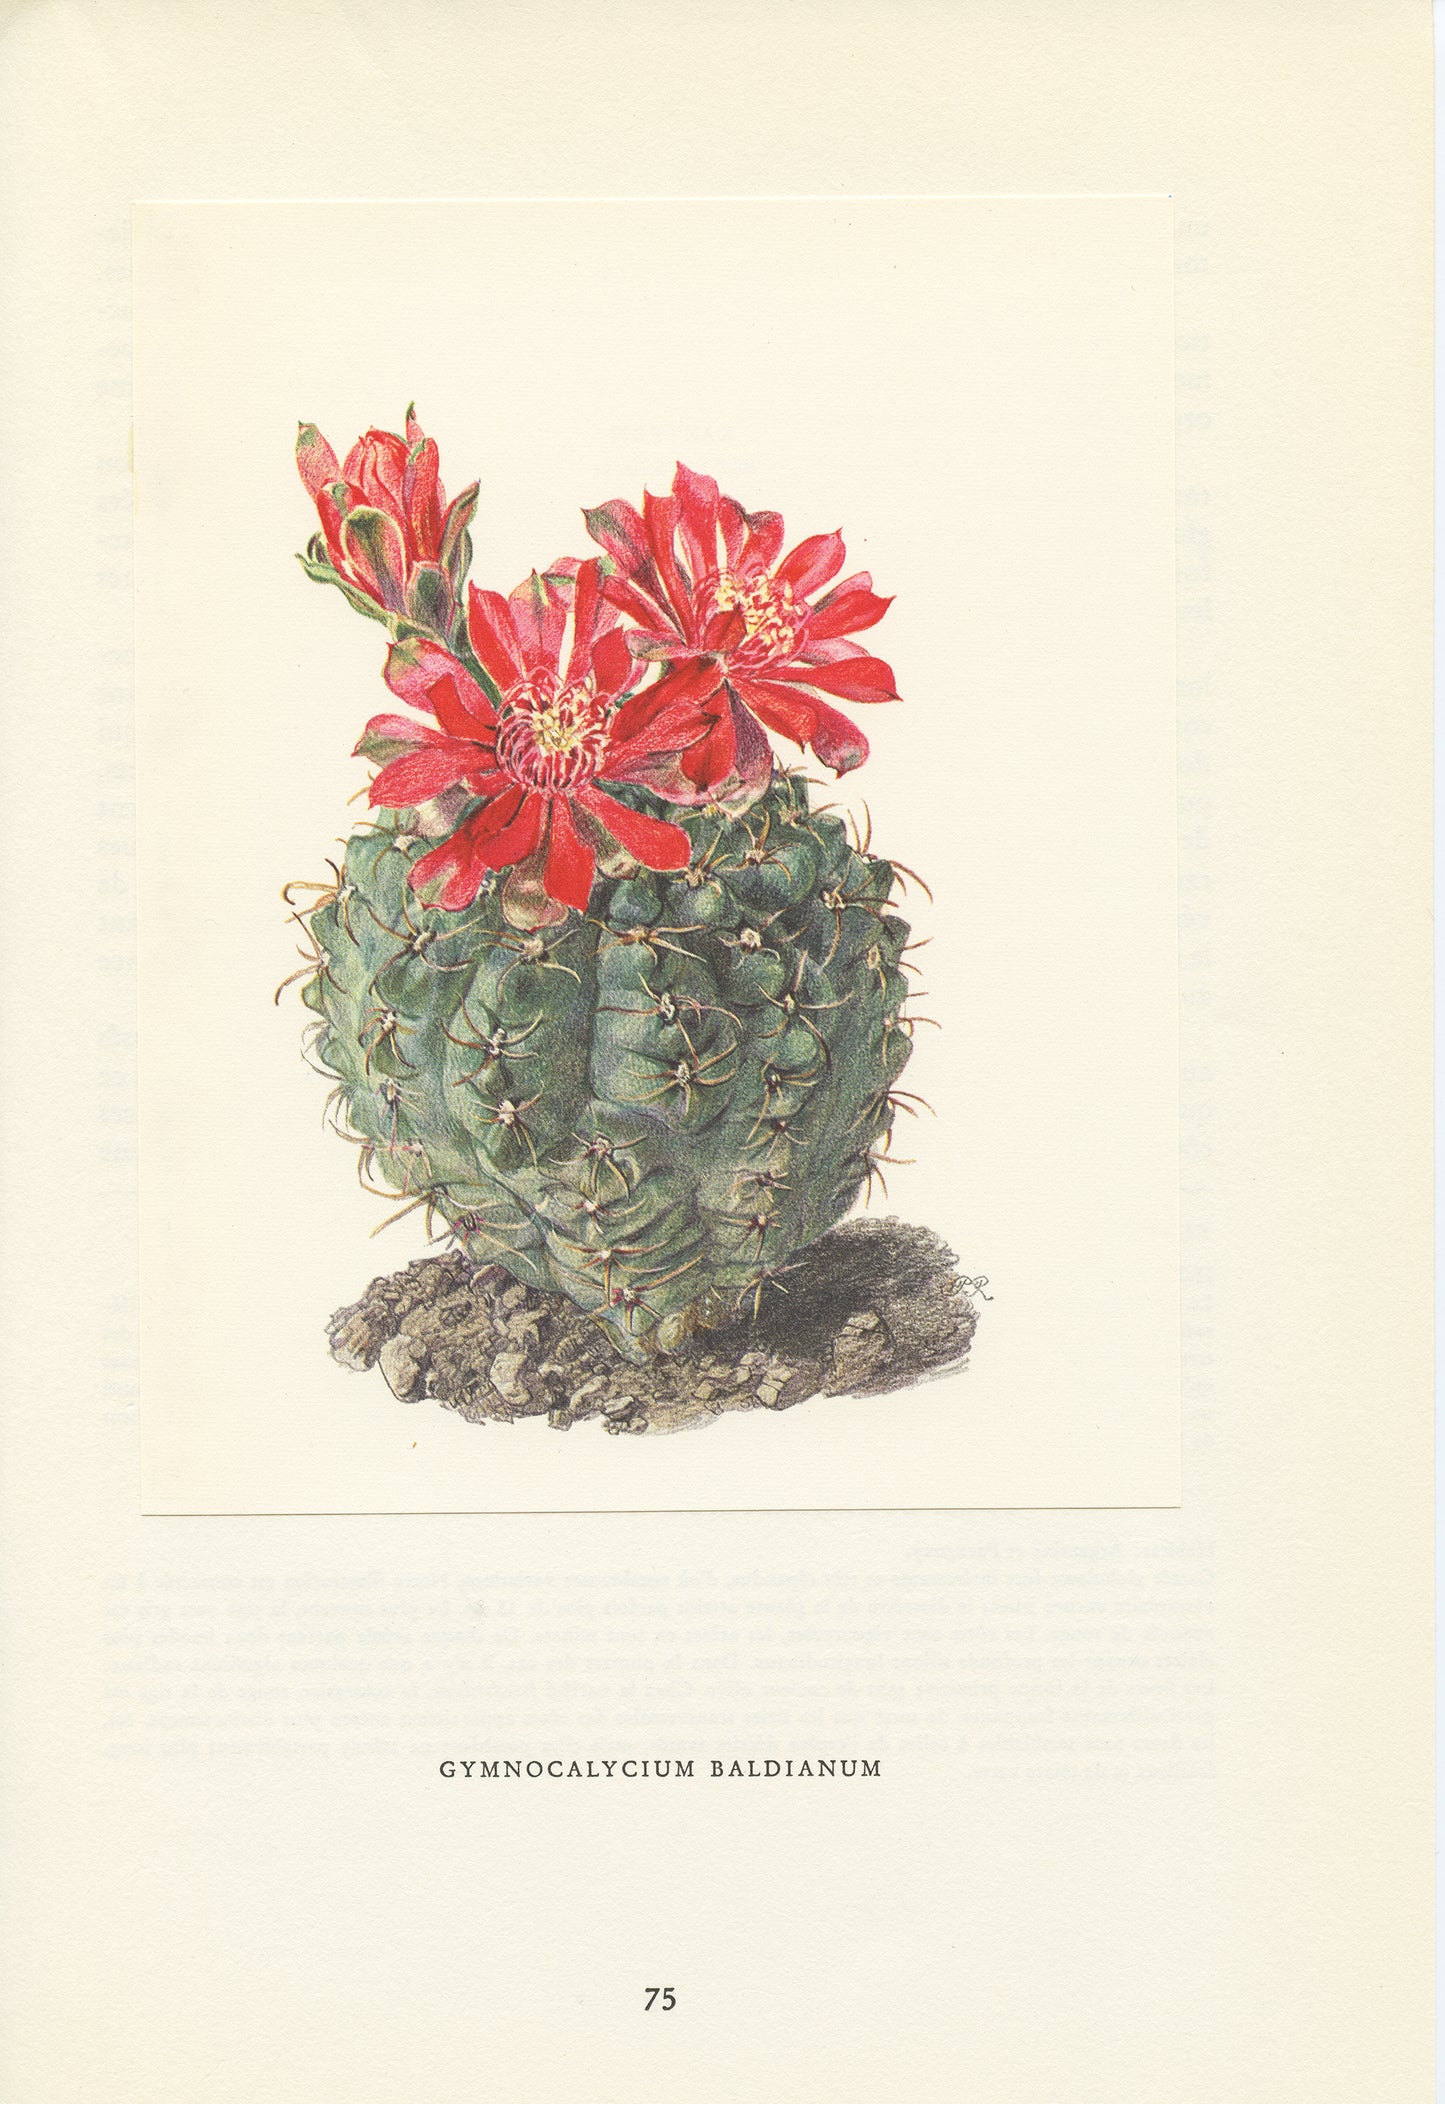 1954 Spider Cactus print Gymnocalycium baldianum